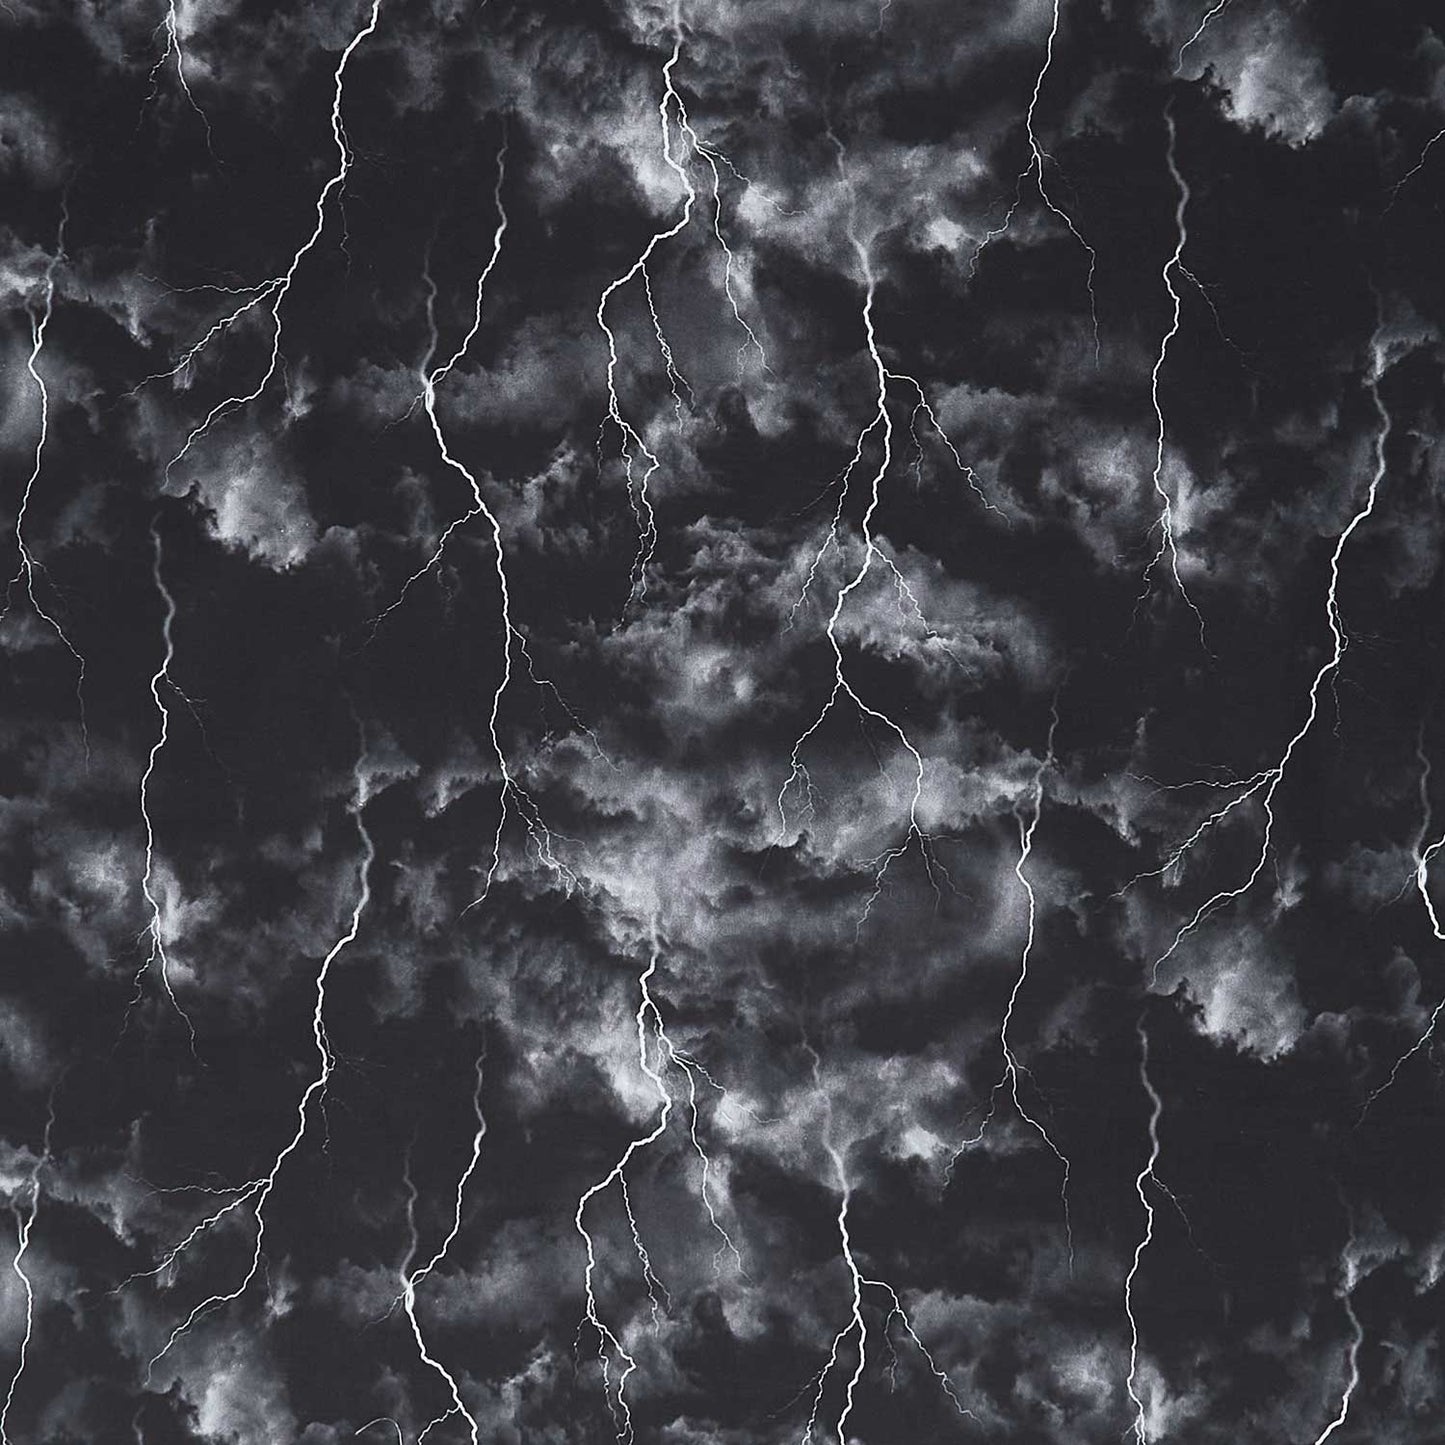 Wicked - Lightning Storm On Dark Sky Night Yardage Primary Image